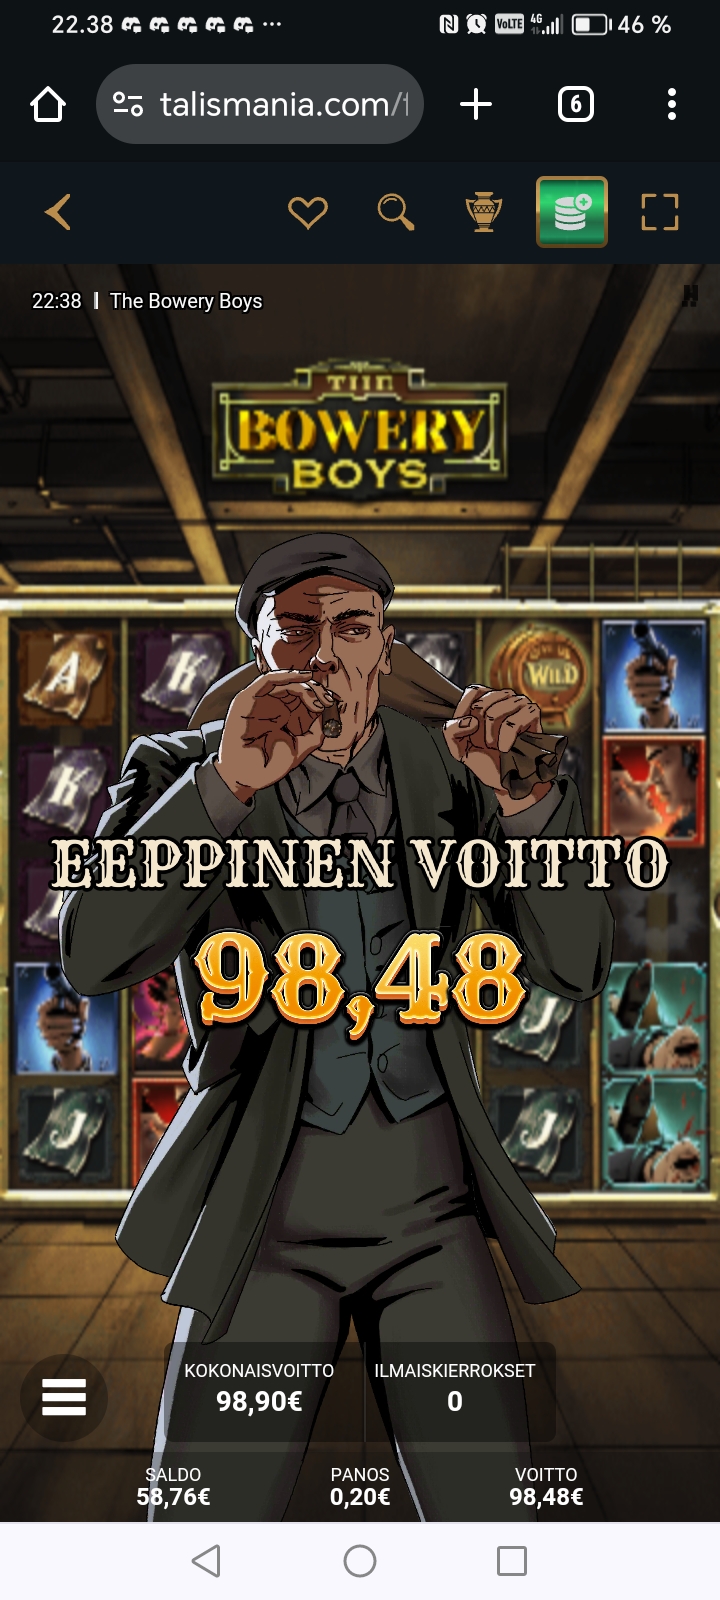 Bowery Boys – Talismania (98.90 eur / 0.20 veto) | Nimismies.